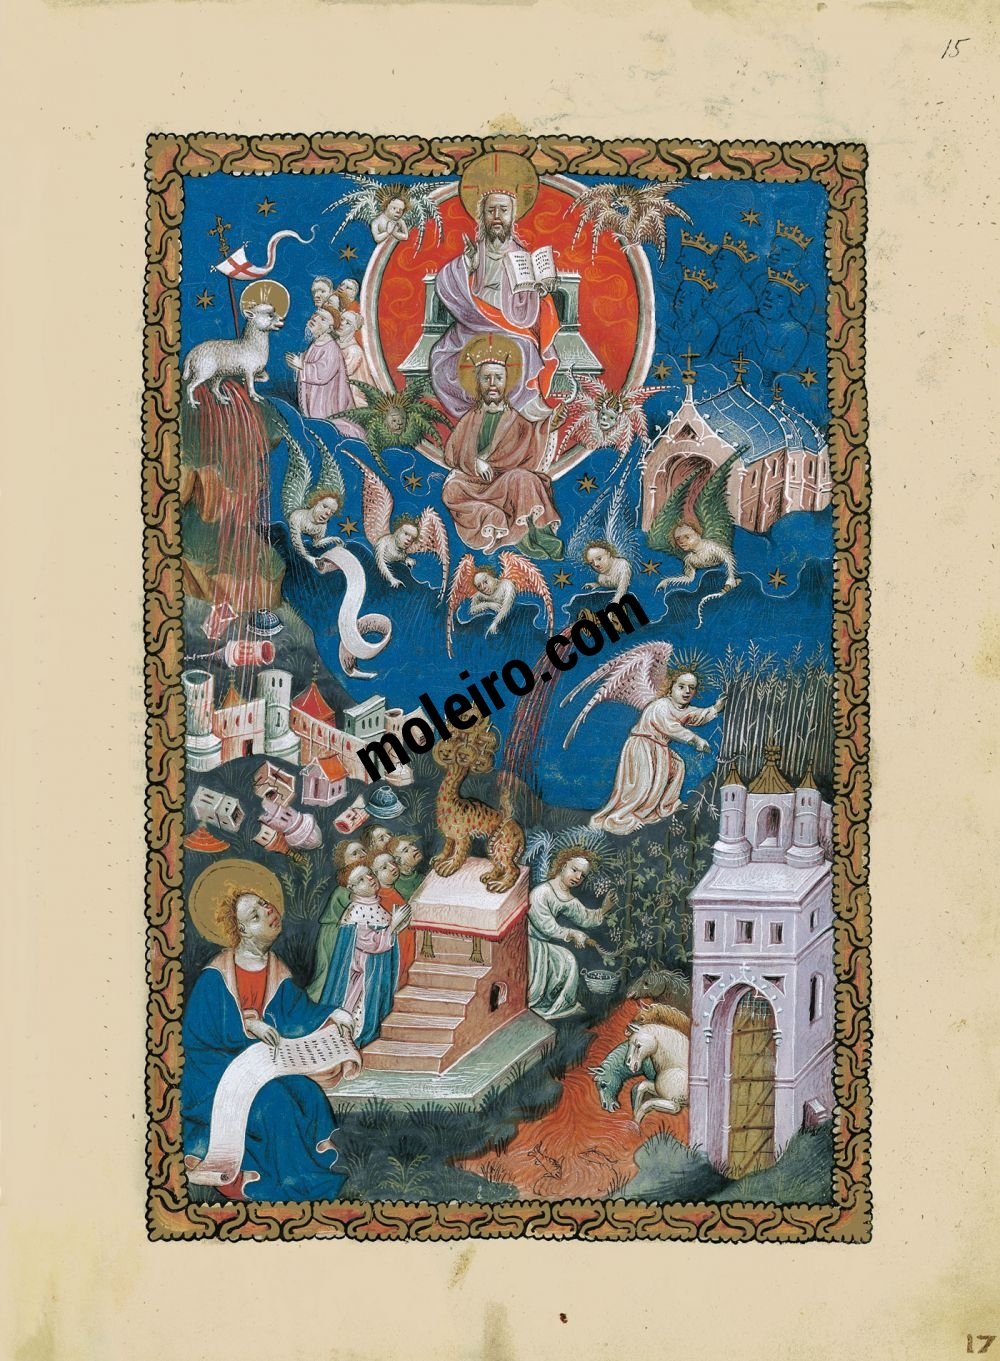 Apocalipsis Flamenco f. 15r, La adoración del Cordero, la caída de Babilonia, la siega y la vendimia